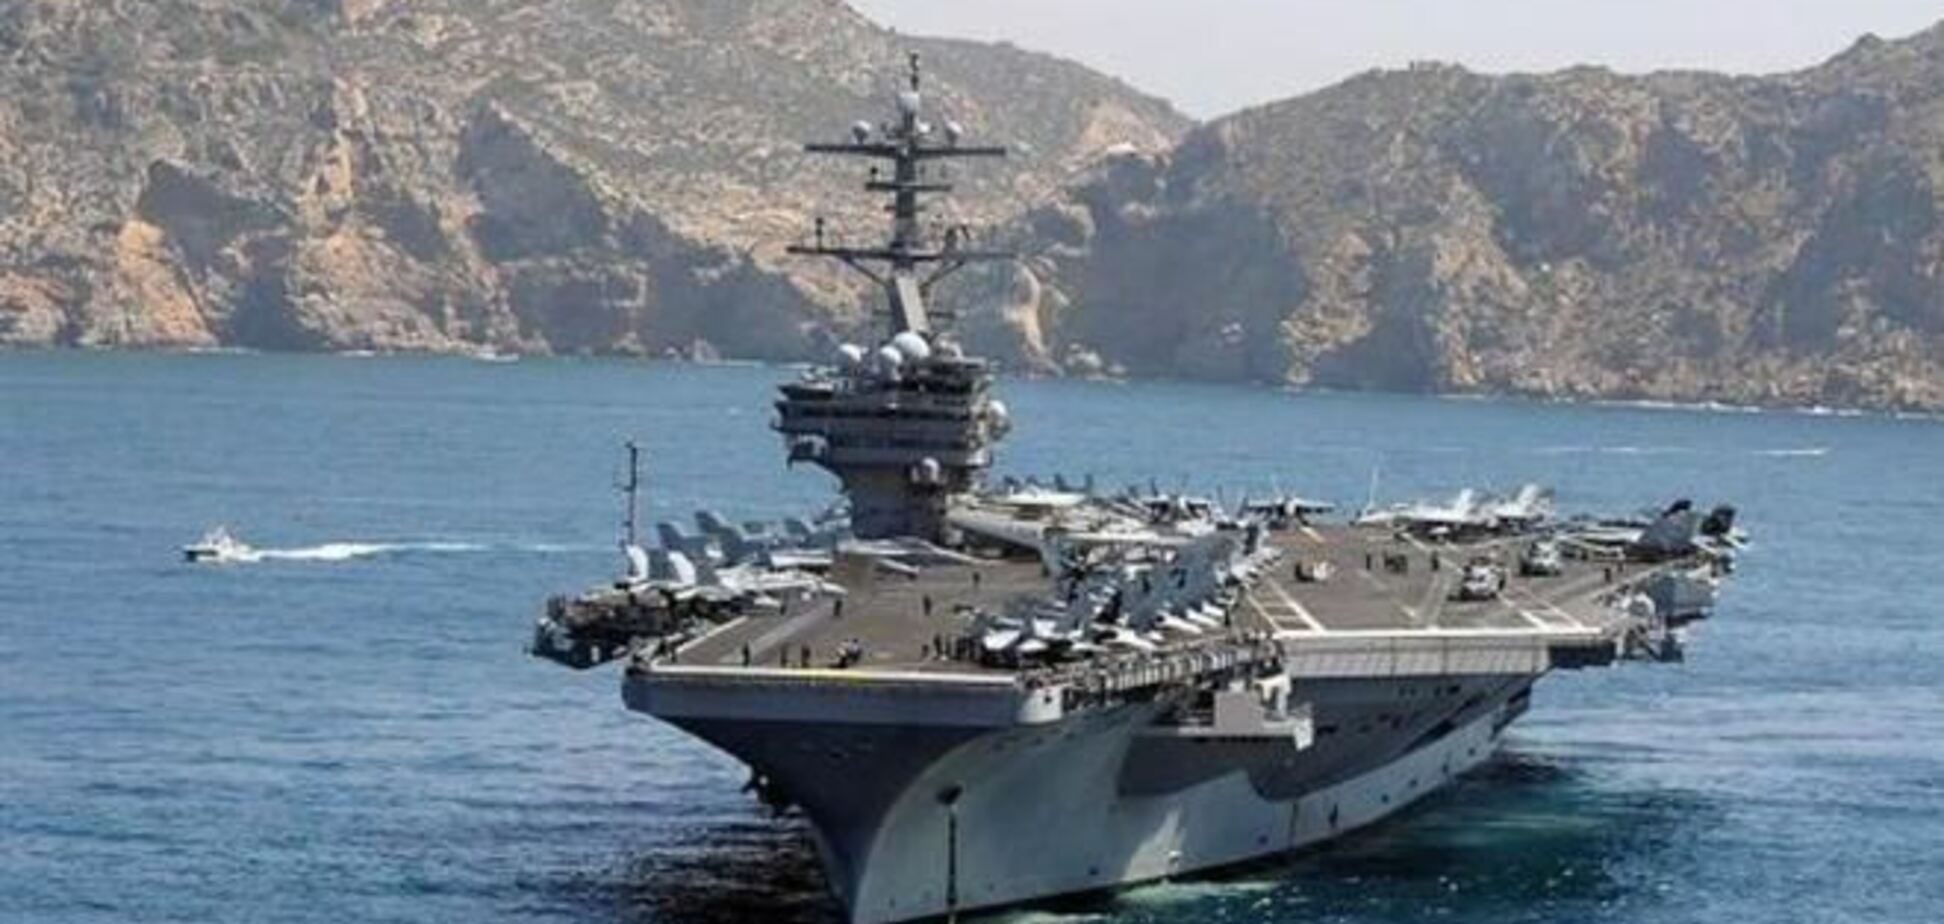 Американські військові кораблі продовжать навчання в Середземному морі